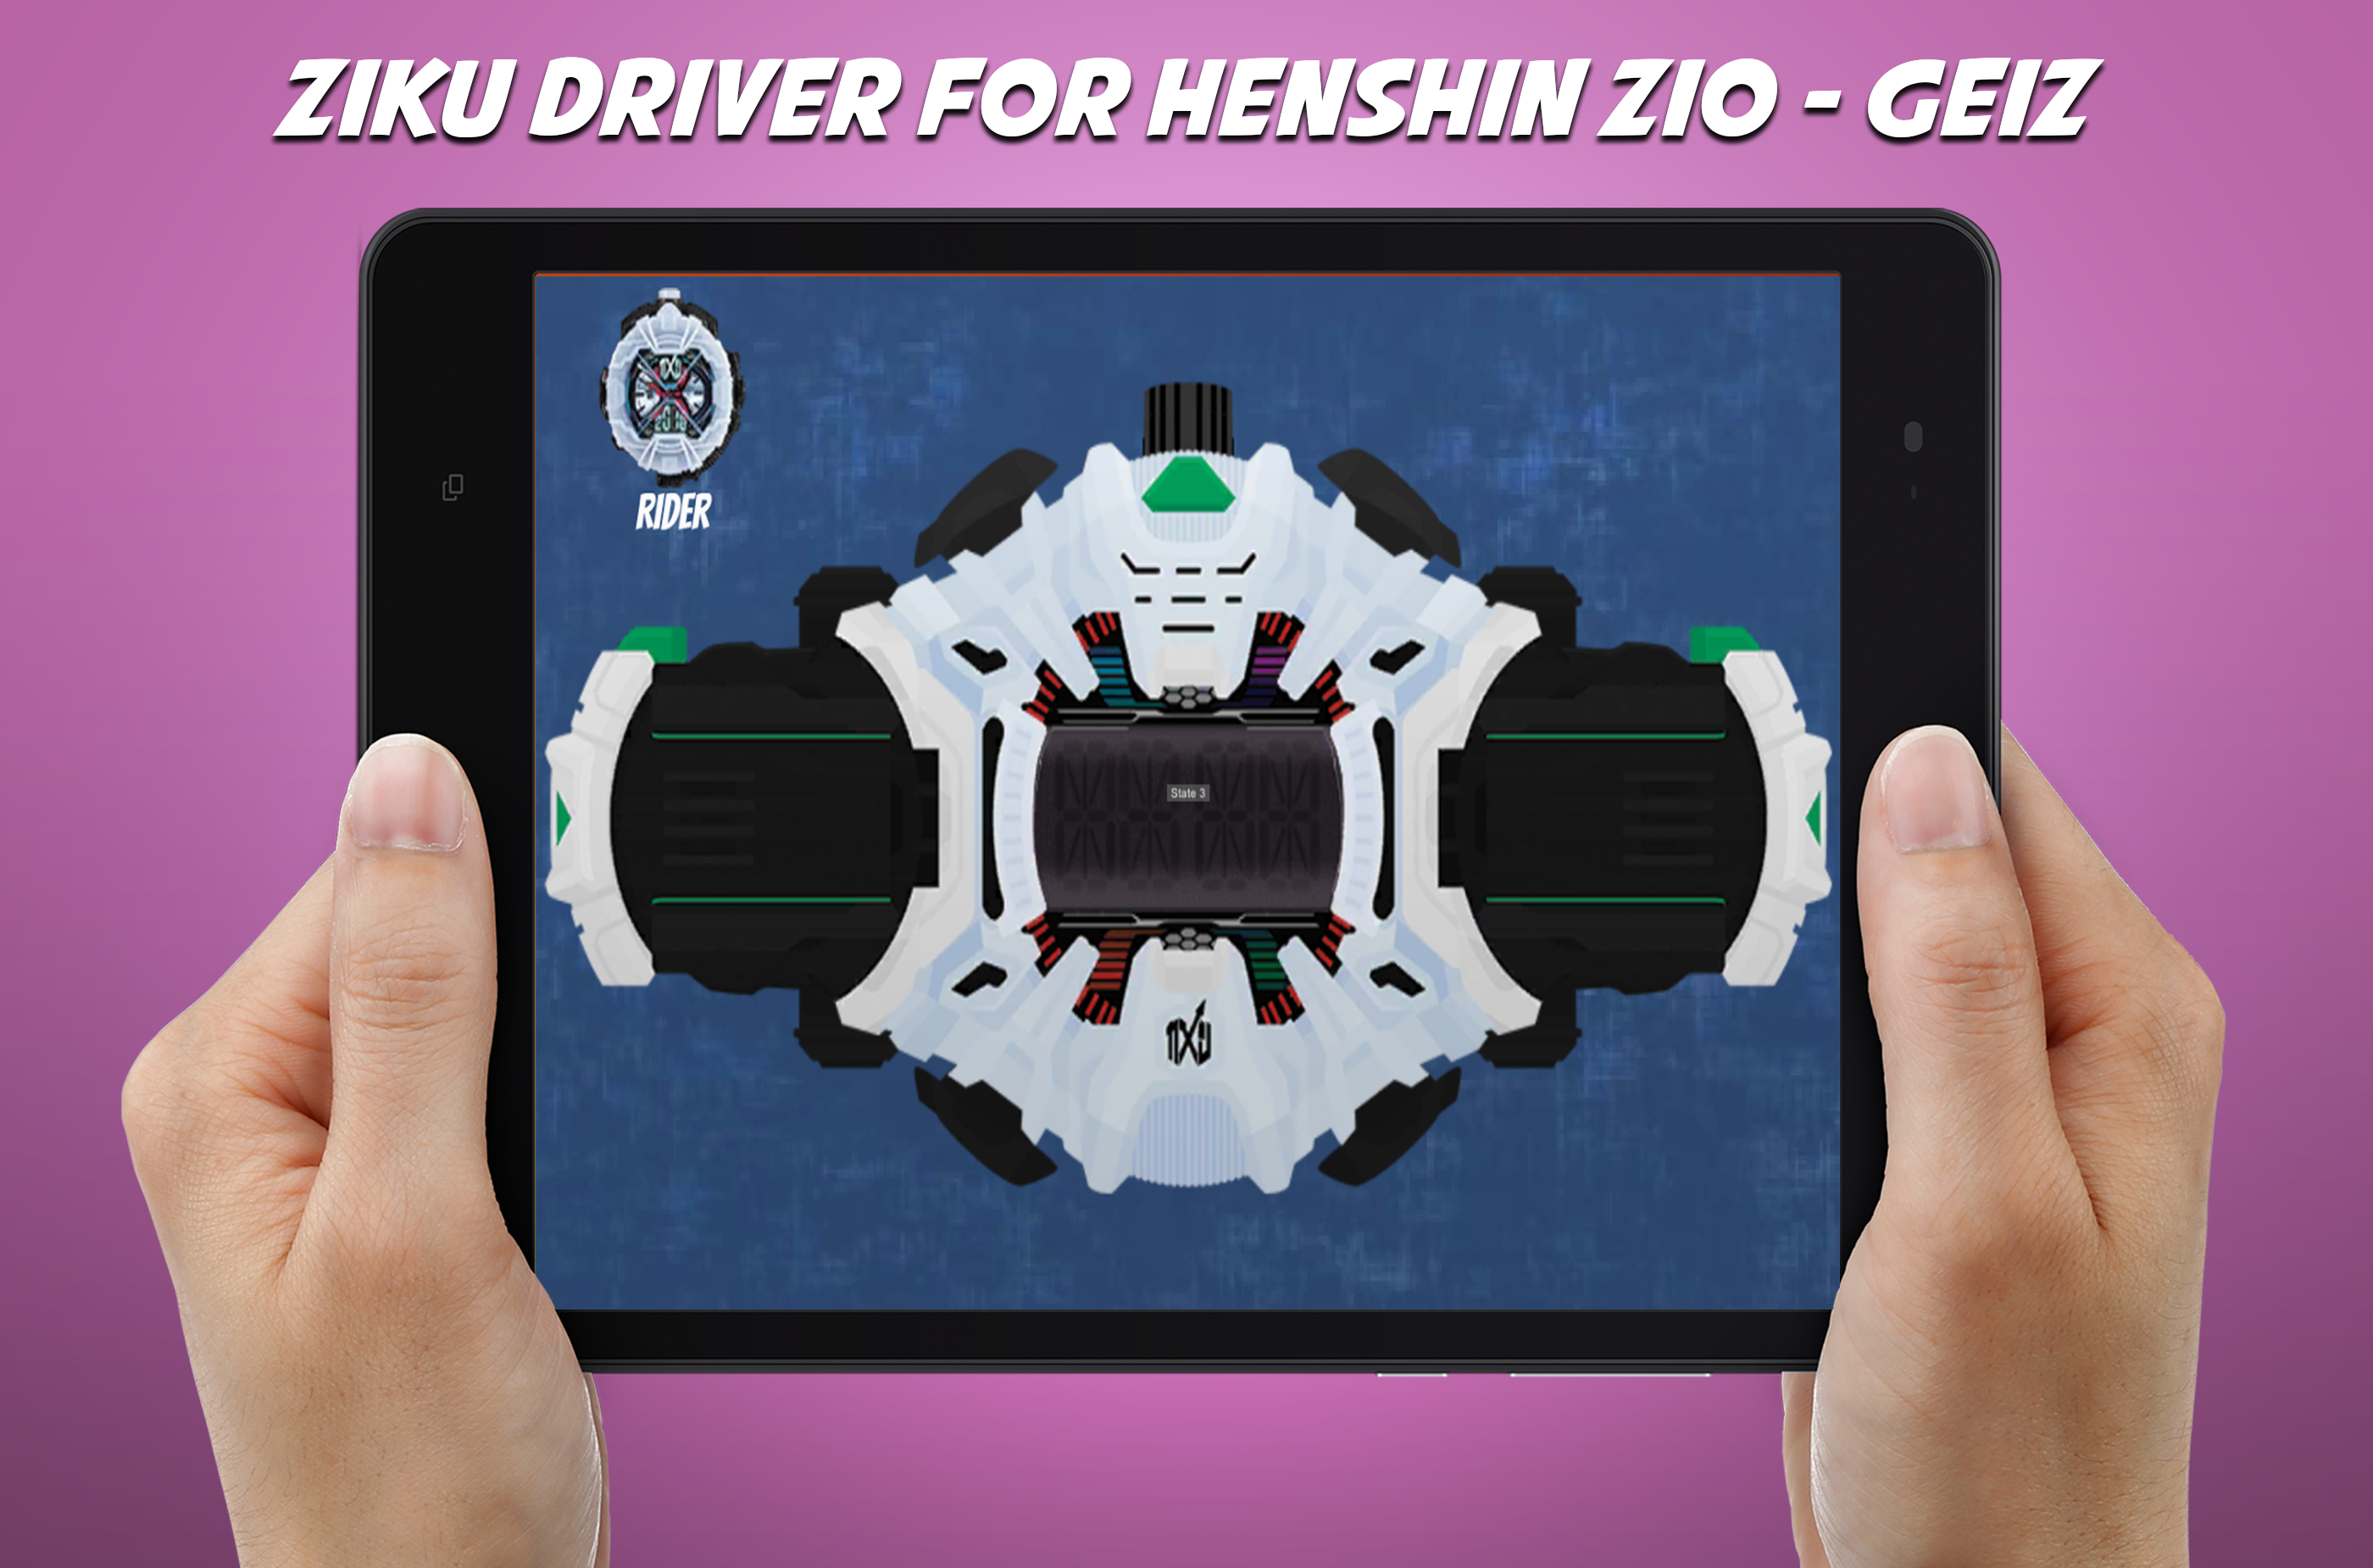 Screenshot 1 of Trascinatore DX Ziku per cintura henshin Zio - Geiz 2.0